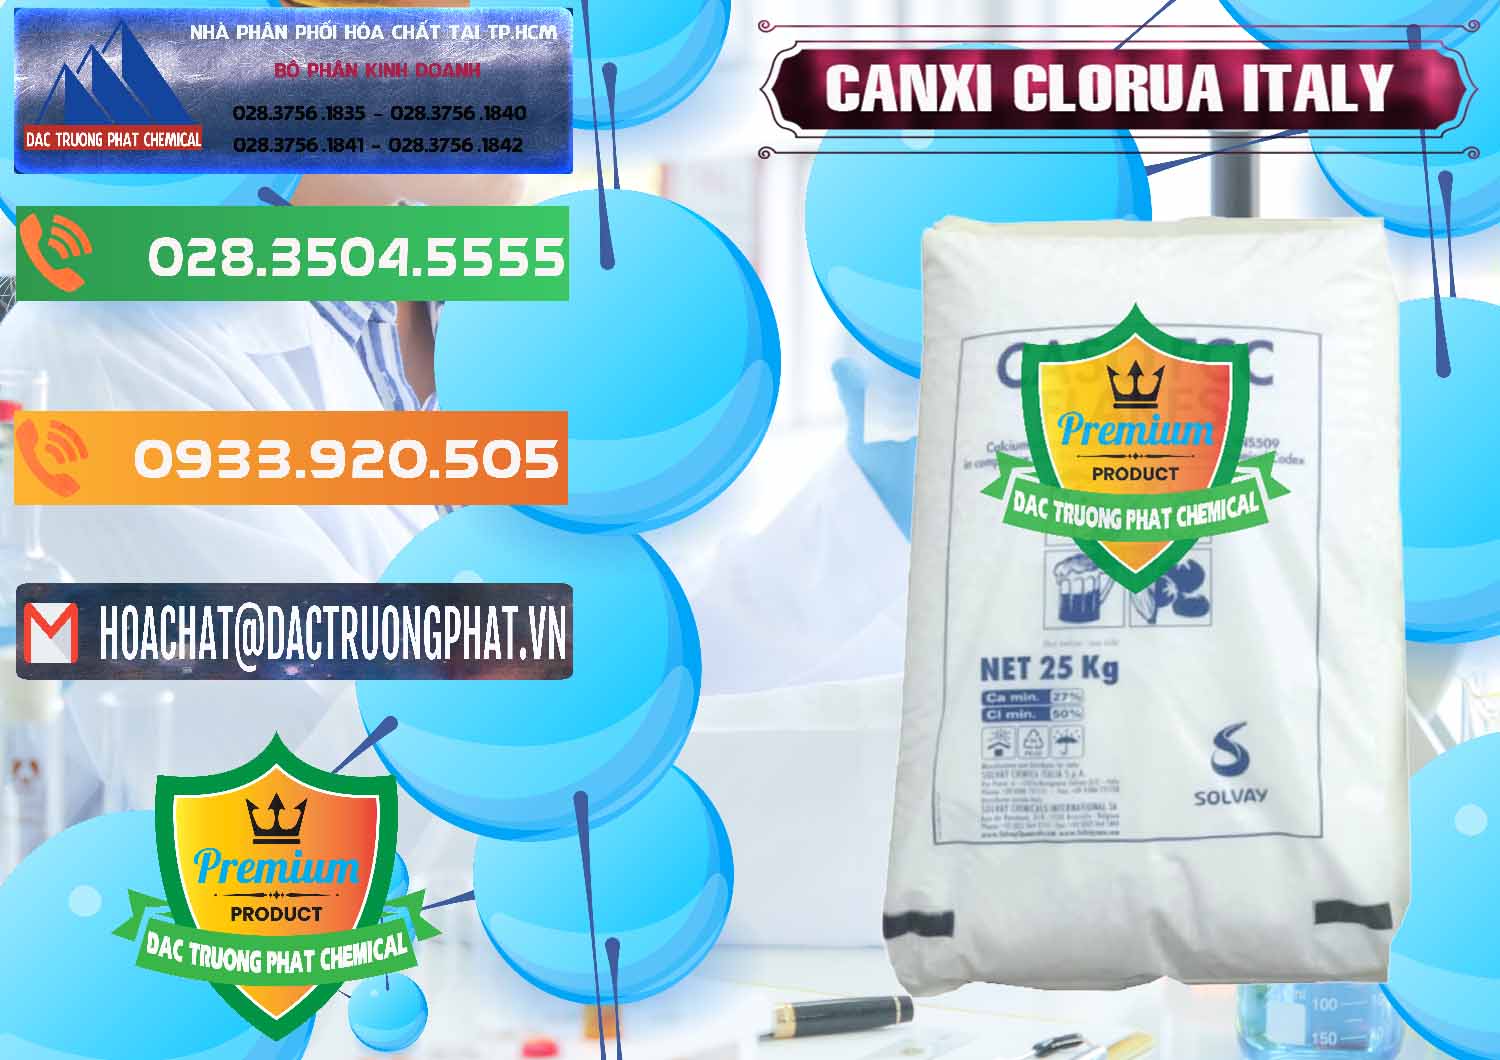 Nơi nhập khẩu _ bán CaCl2 – Canxi Clorua Food Grade Ý Italy - 0435 - Cty cung cấp và kinh doanh hóa chất tại TP.HCM - hoachatxulynuoc.com.vn